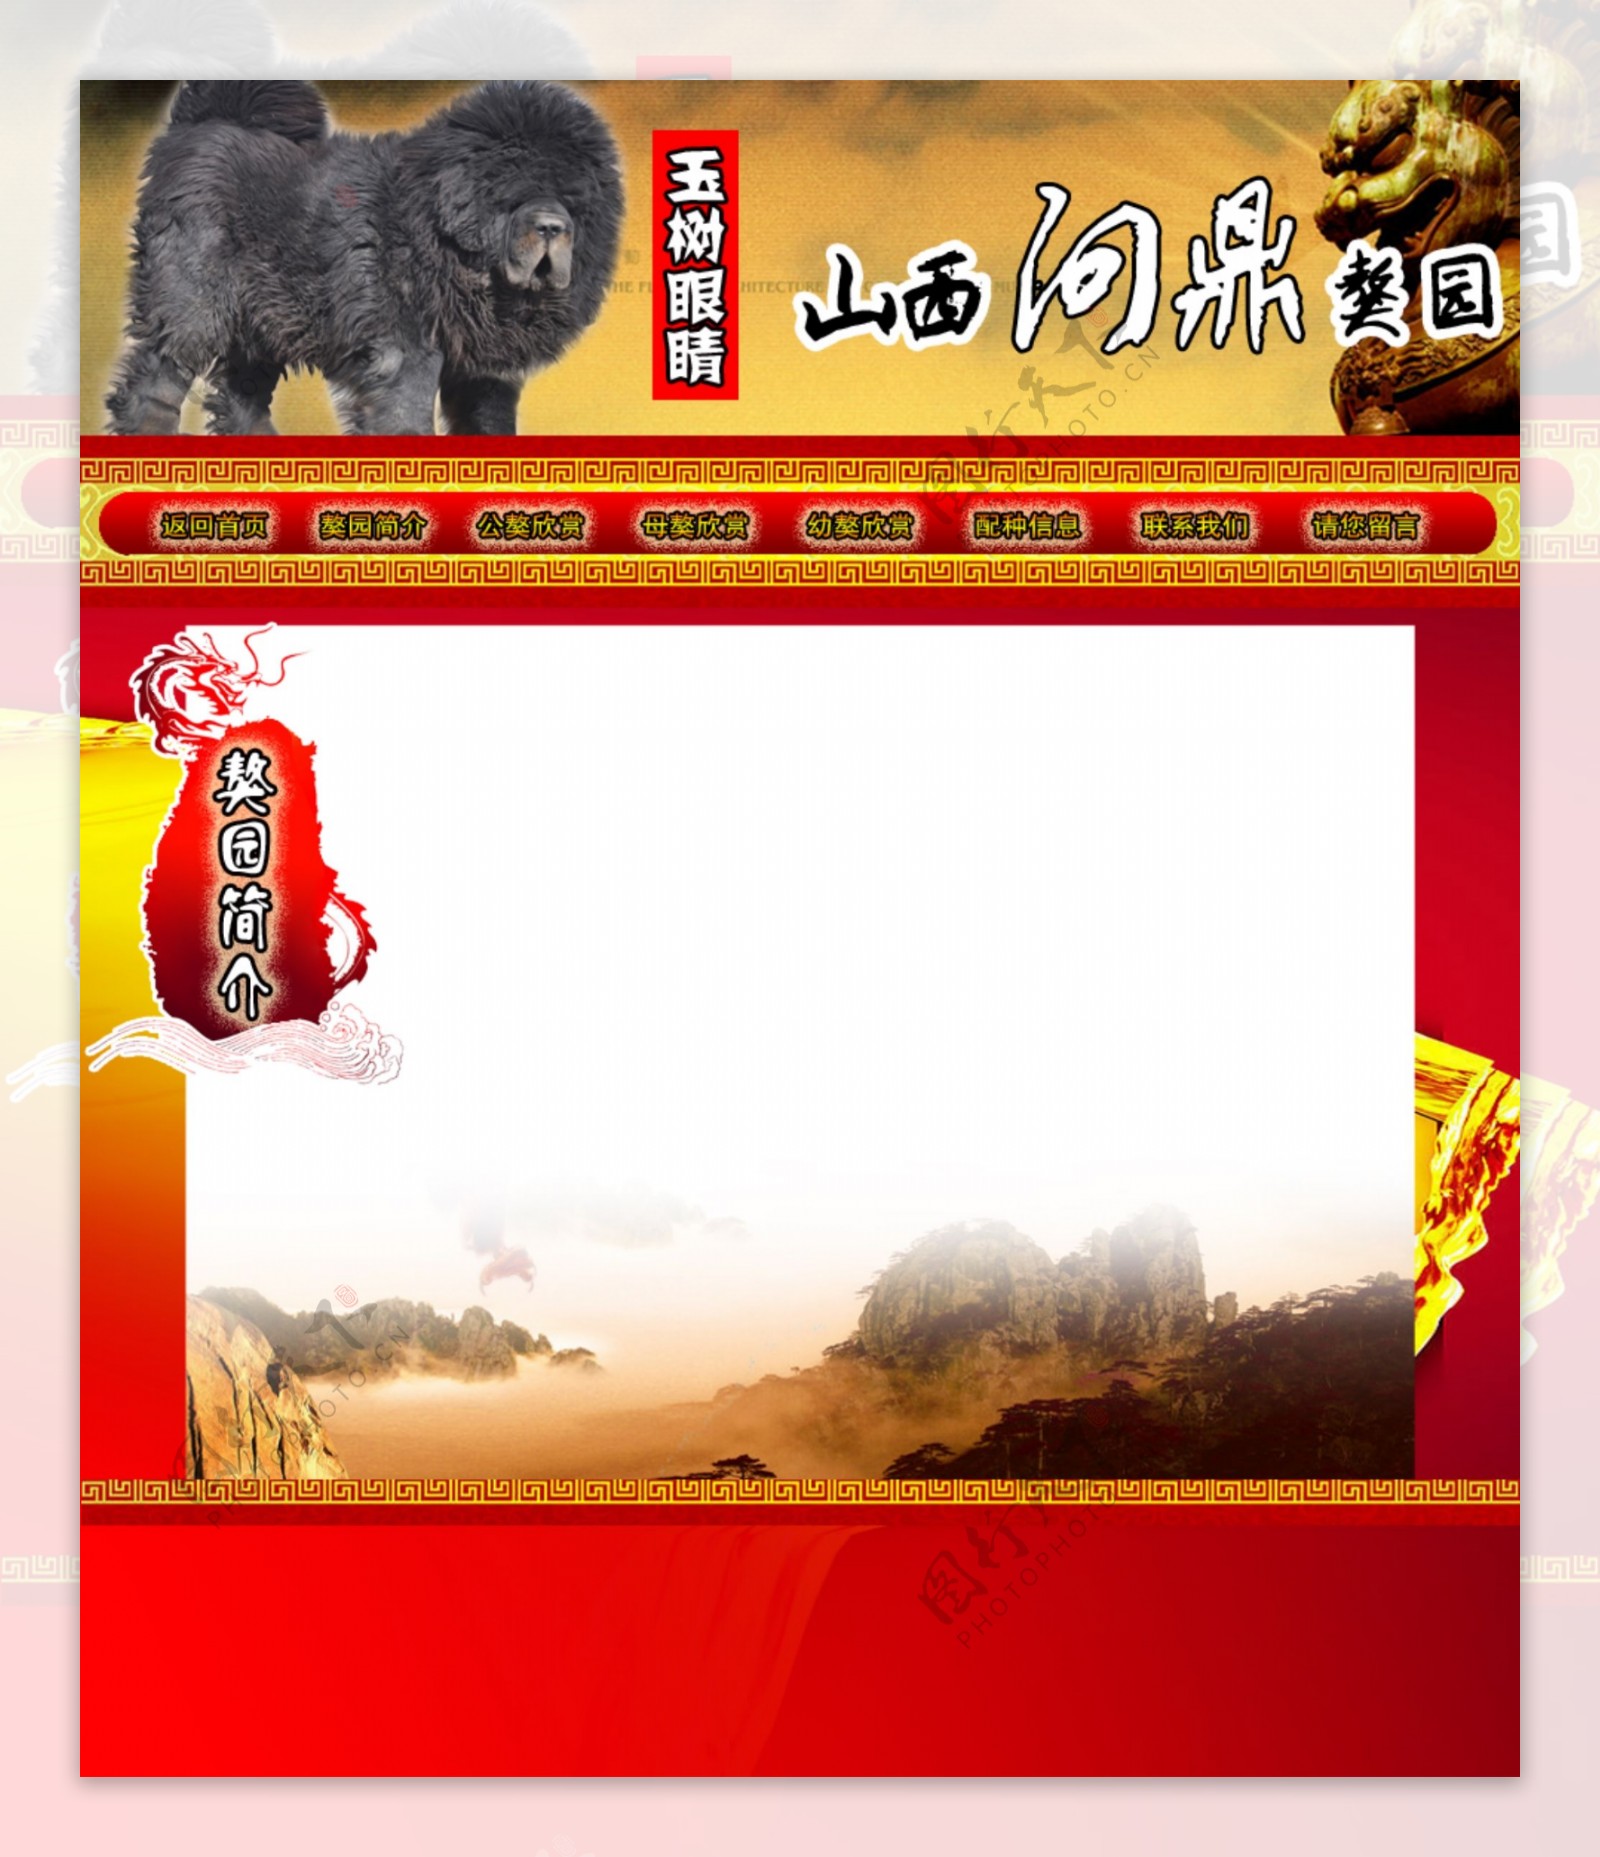 藏獒网页版面图片